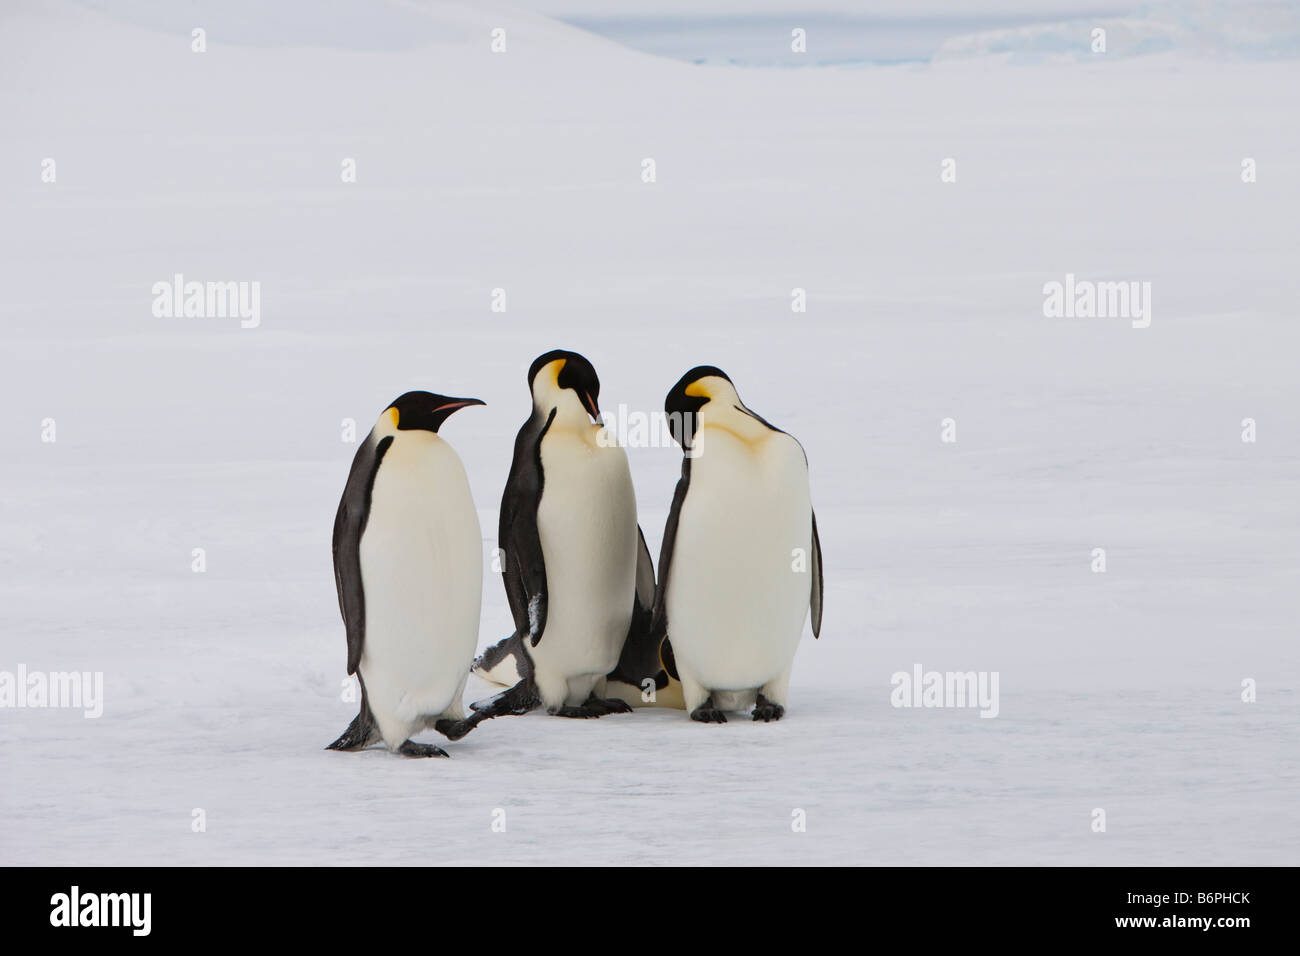 Groupe de manchots empereurs debout sur l'eau de mer gelée ou la banquise dans la mer de Weddell de l'Antarctique. Banque D'Images